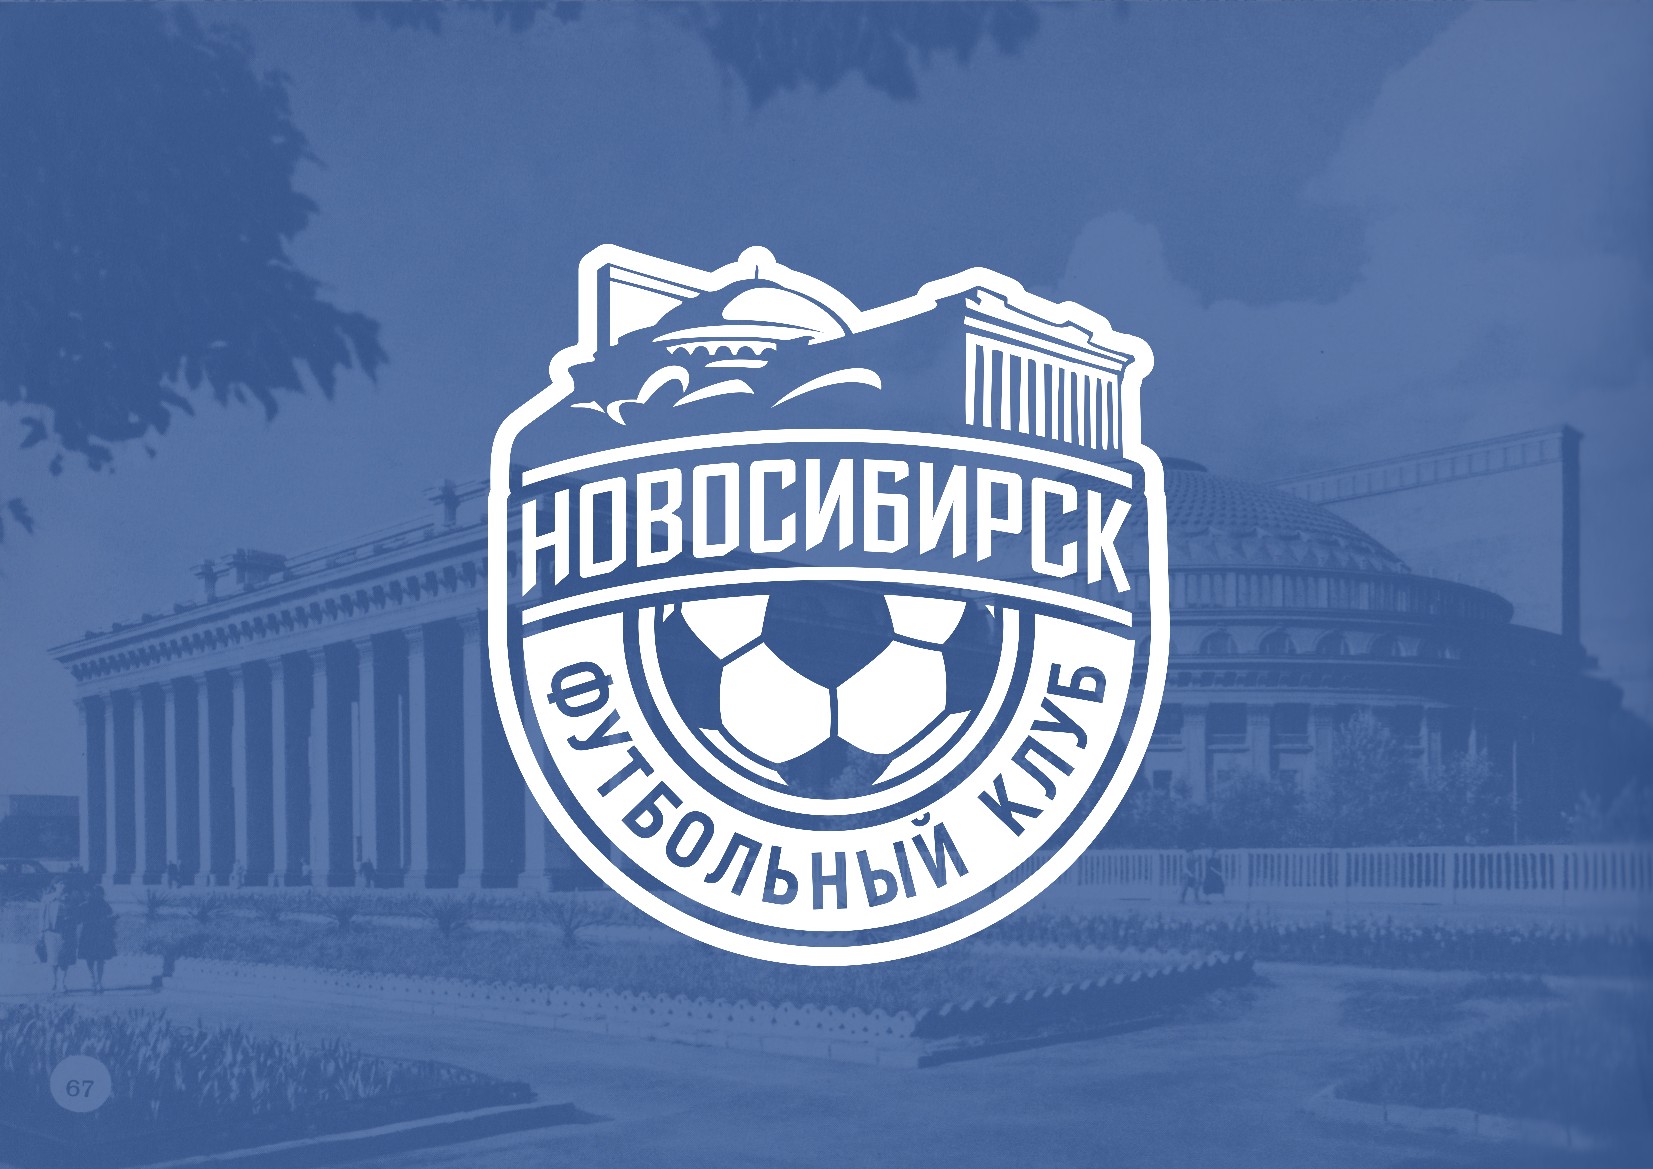 Первый домашний матч ФК «Новосибирск»